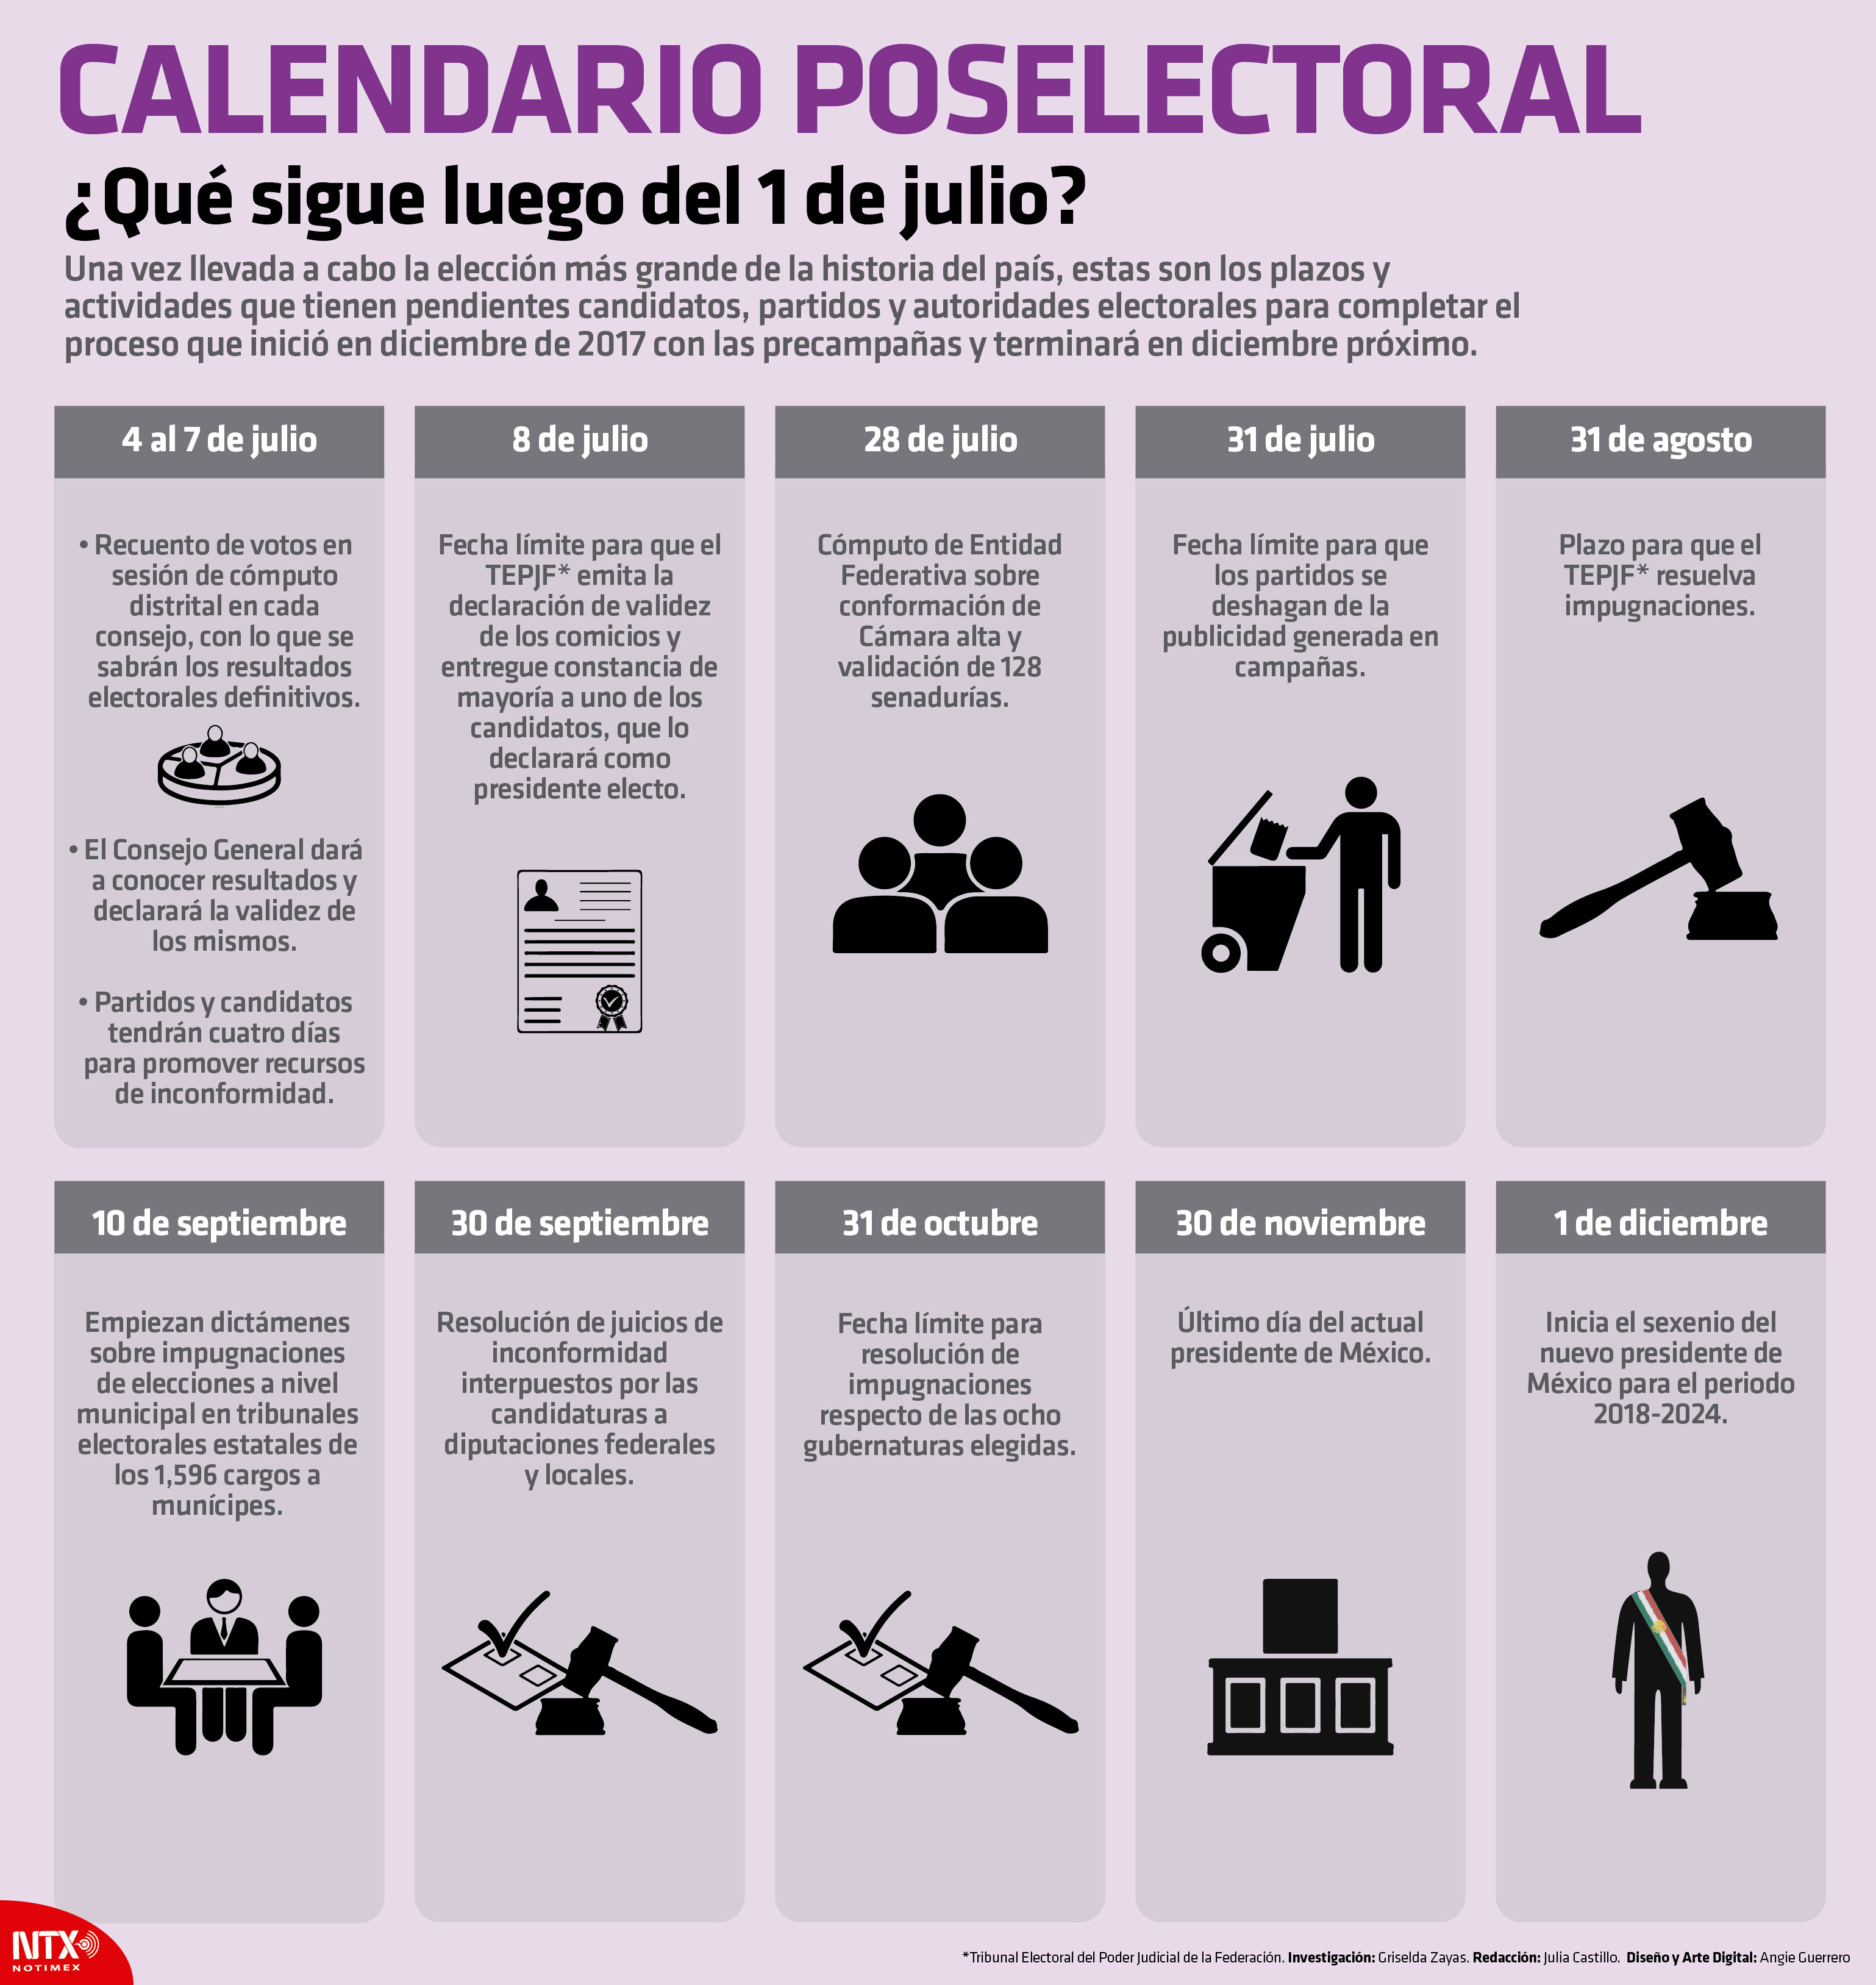 Calendario Poselectoral, Qu sigue luego de 1 de julio?